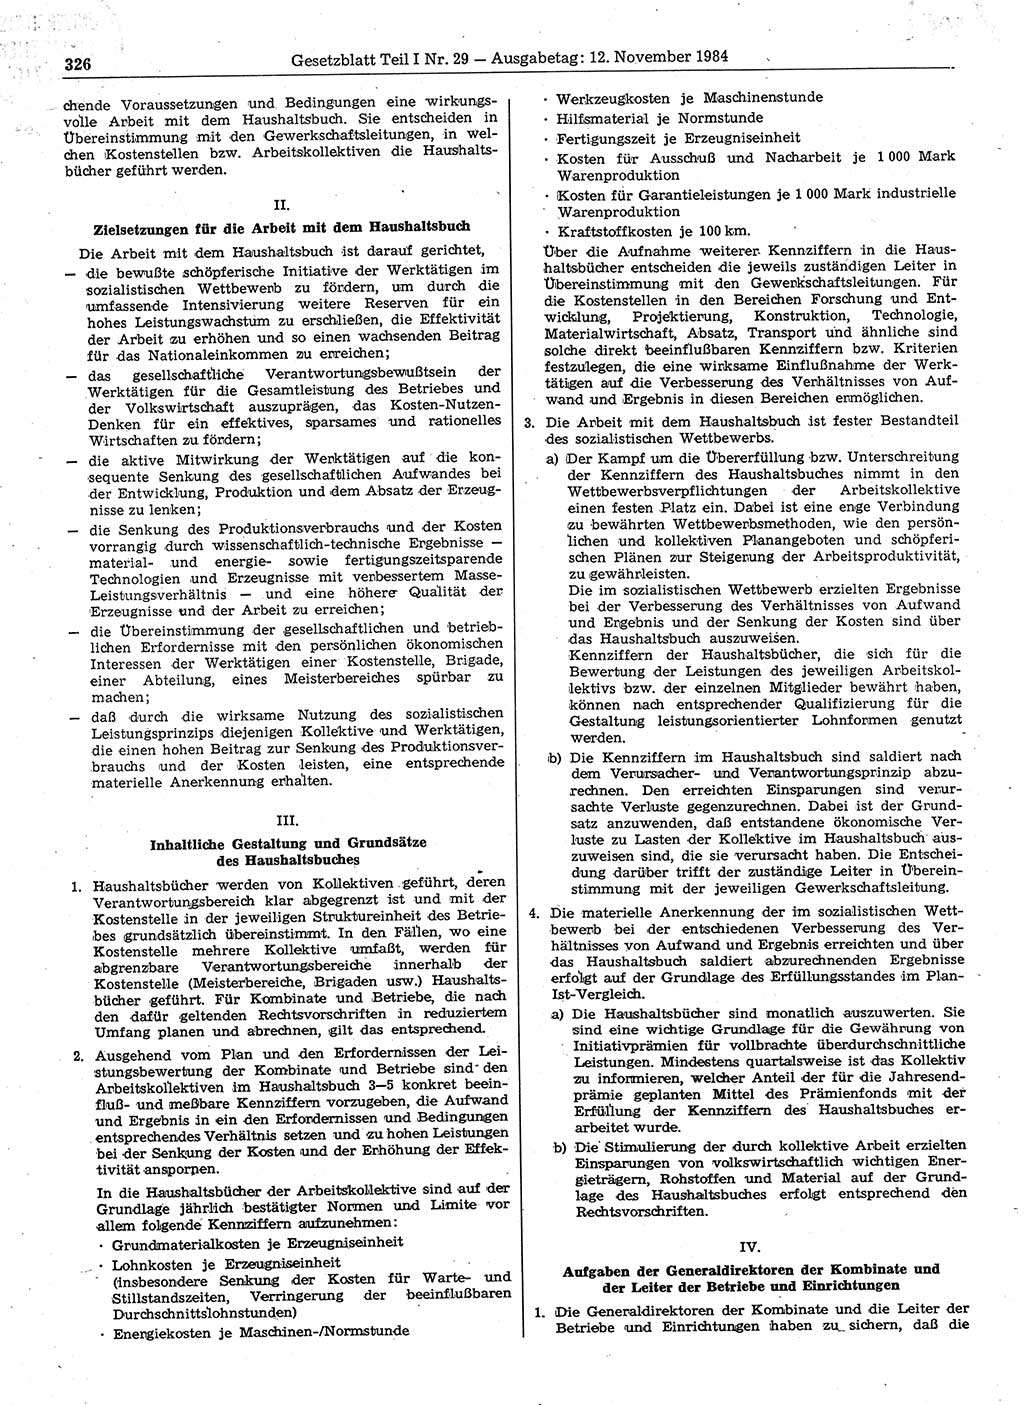 Gesetzblatt (GBl.) der Deutschen Demokratischen Republik (DDR) Teil Ⅰ 1984, Seite 326 (GBl. DDR Ⅰ 1984, S. 326)